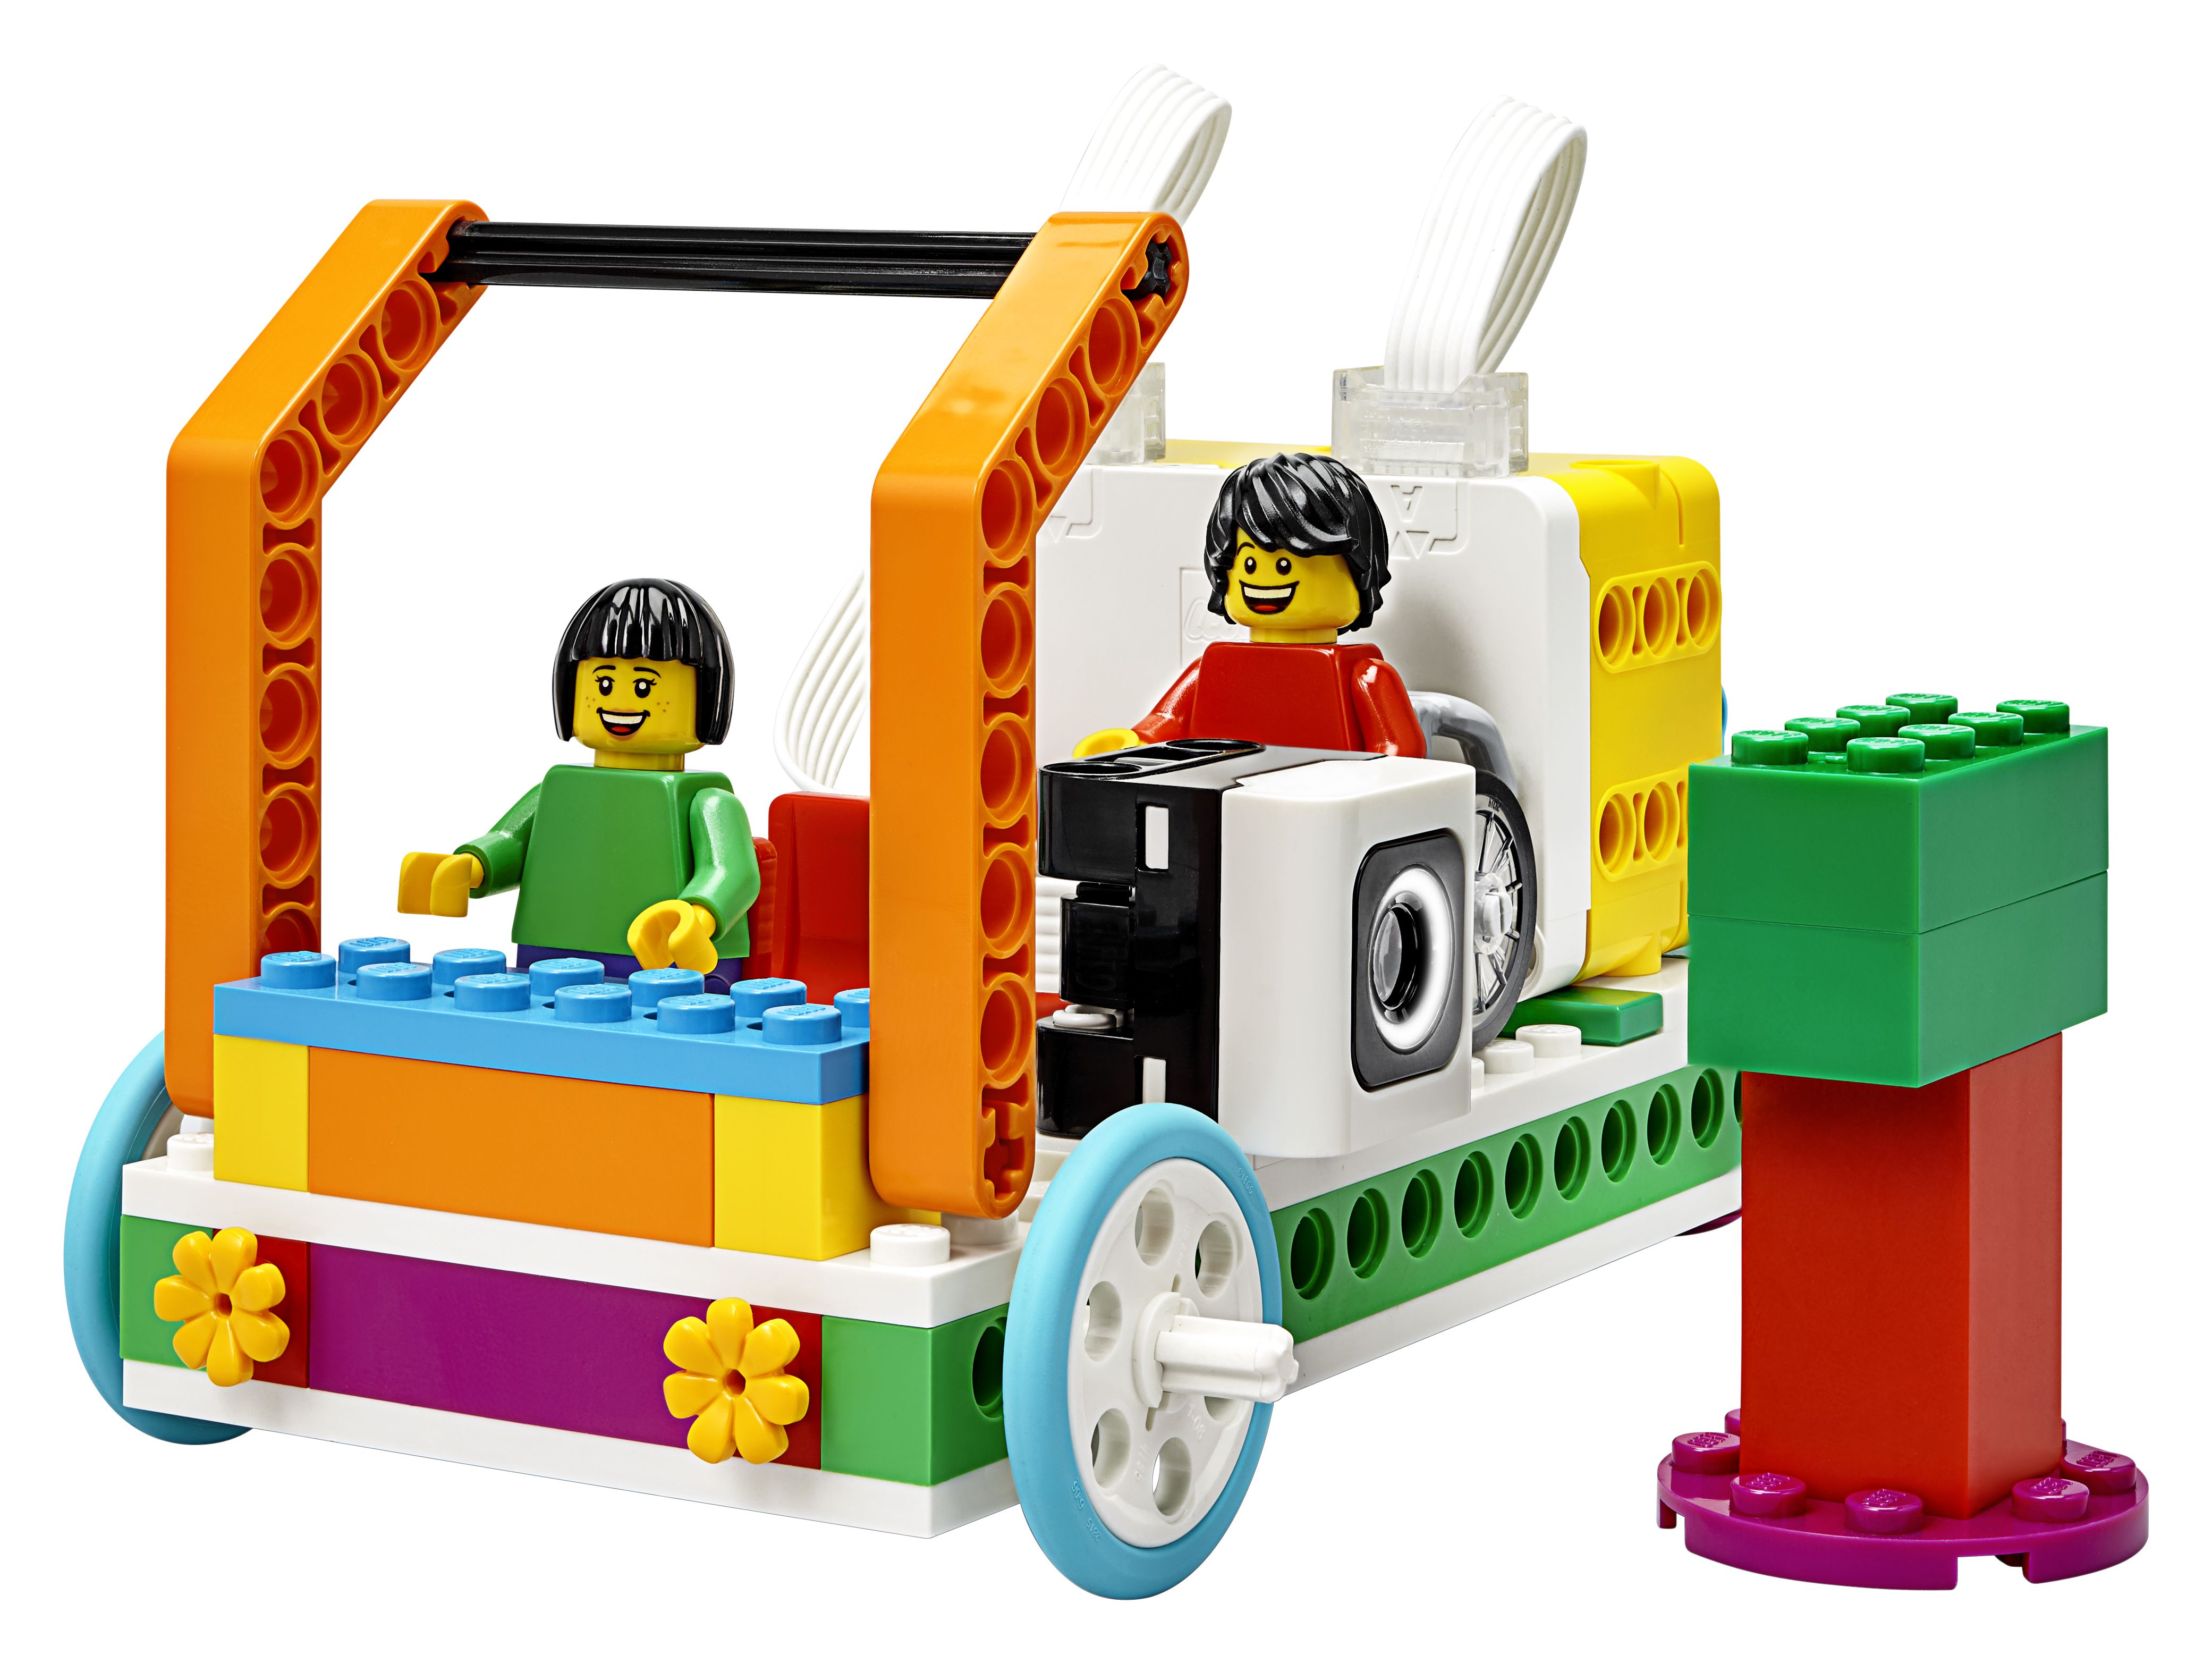 LEGO Education SPIKE Essential | Insplay